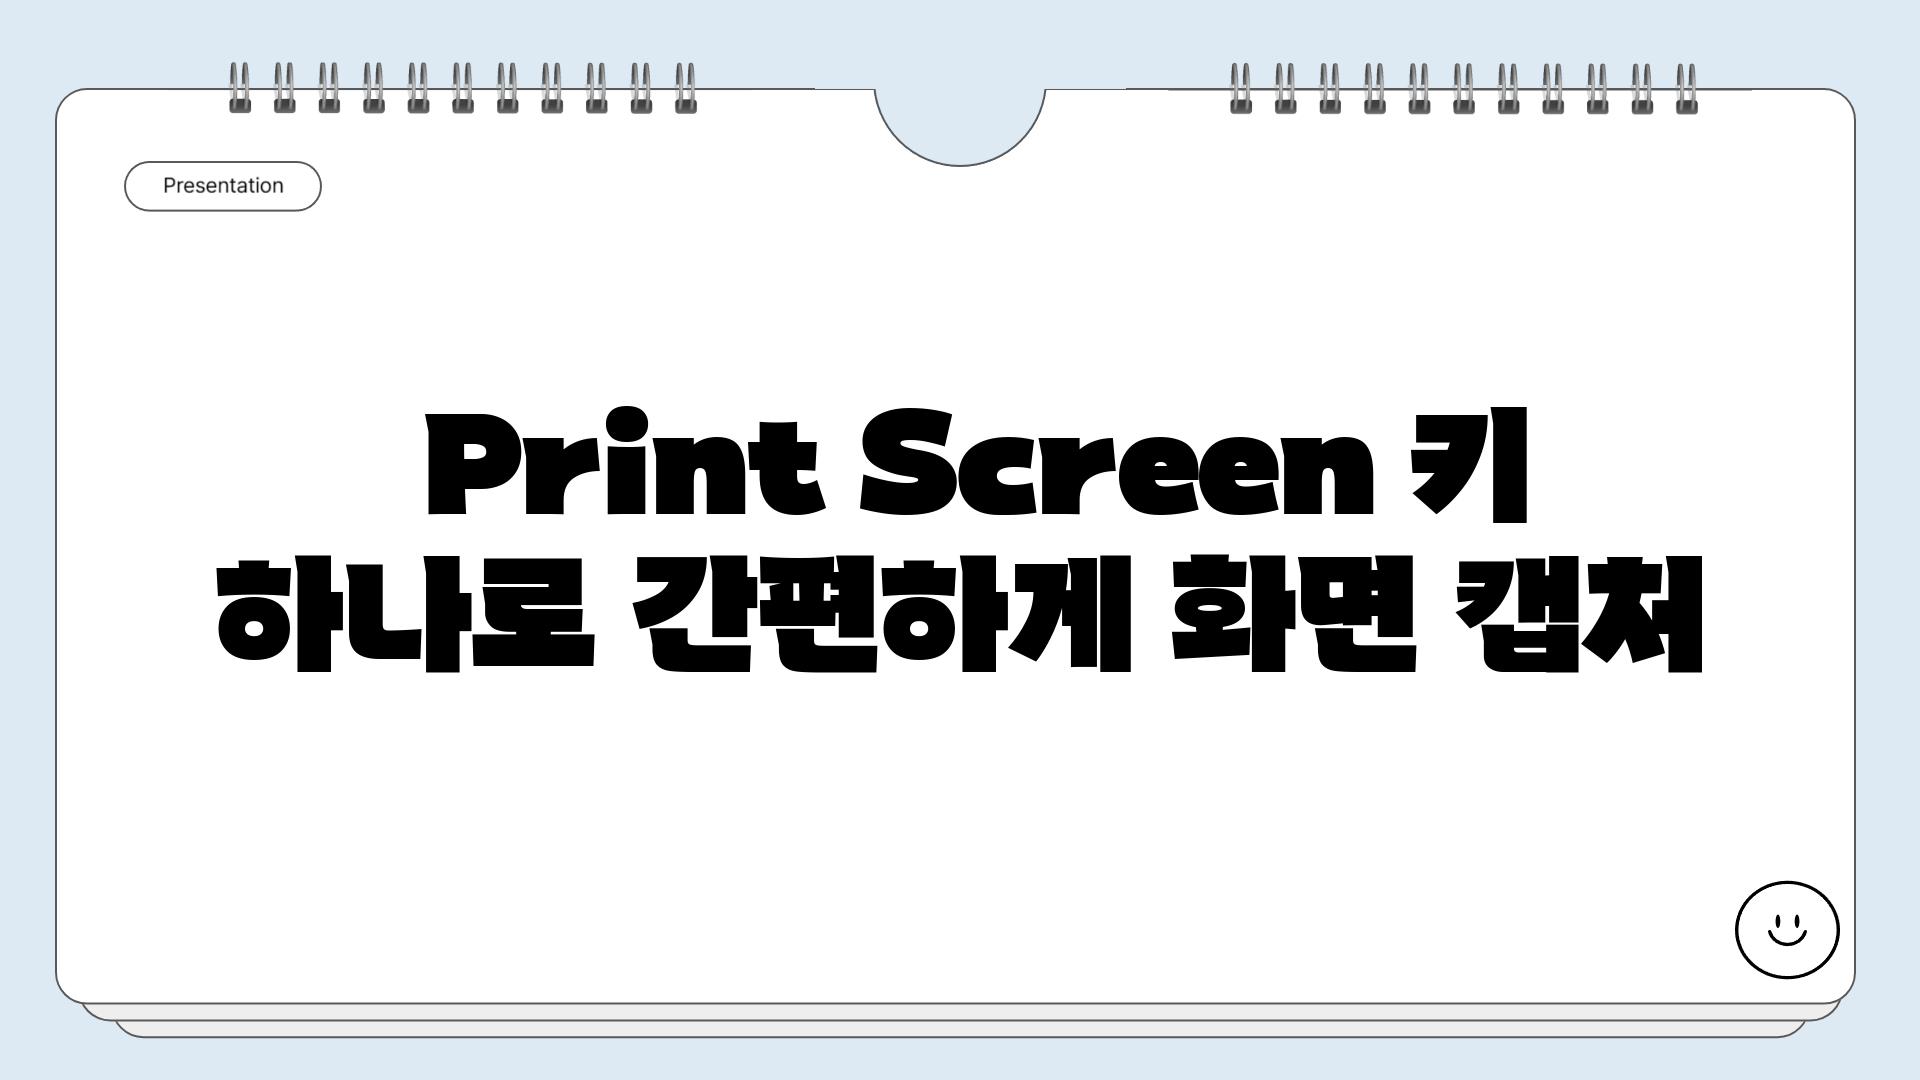  Print Screen 키 하나로 간편하게 화면 캡처